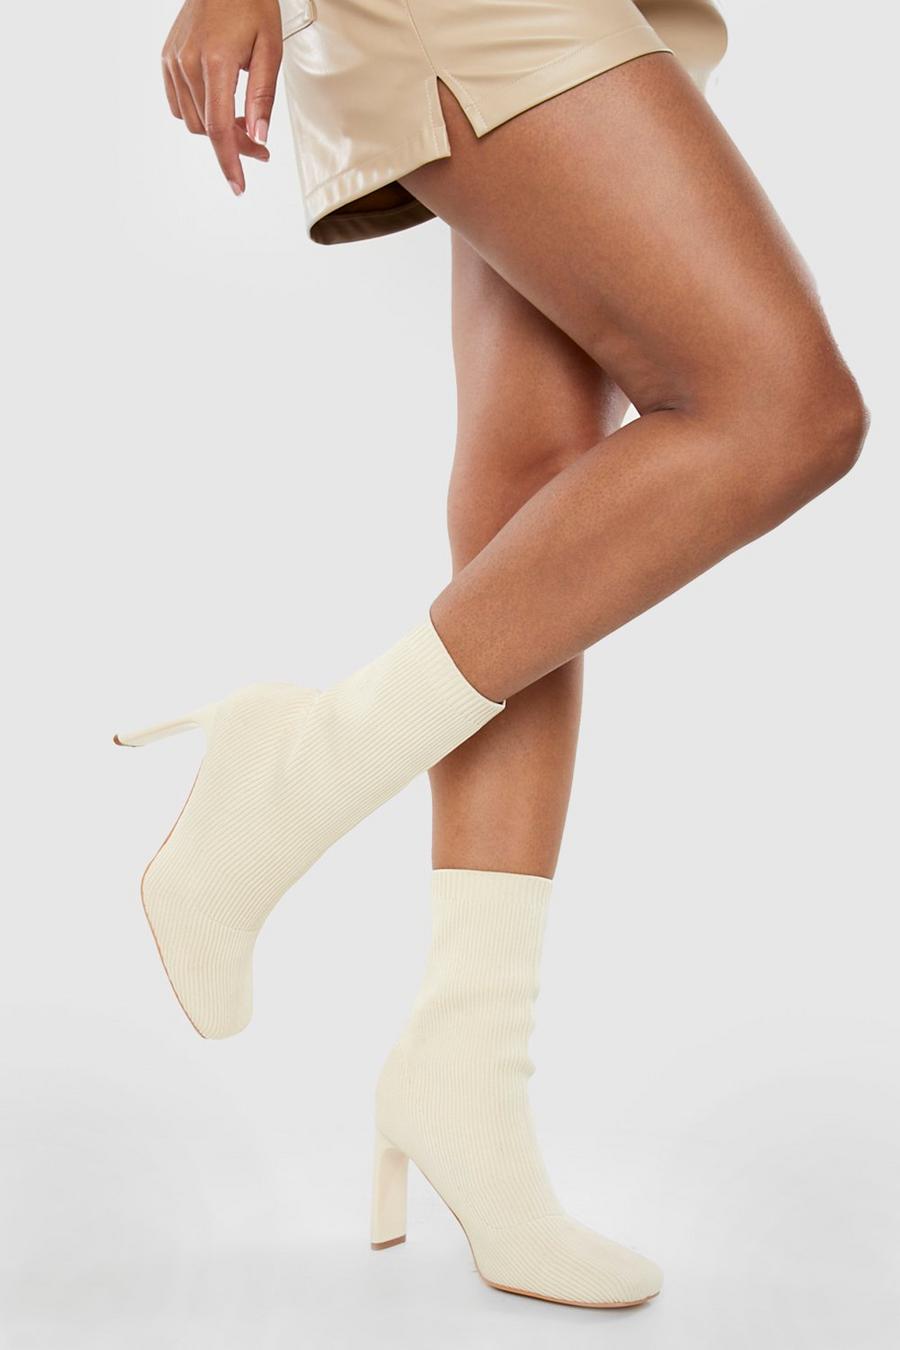 Botas calcetín de holgura ancha tela con puntera cuadrada, Cream blanco image number 1